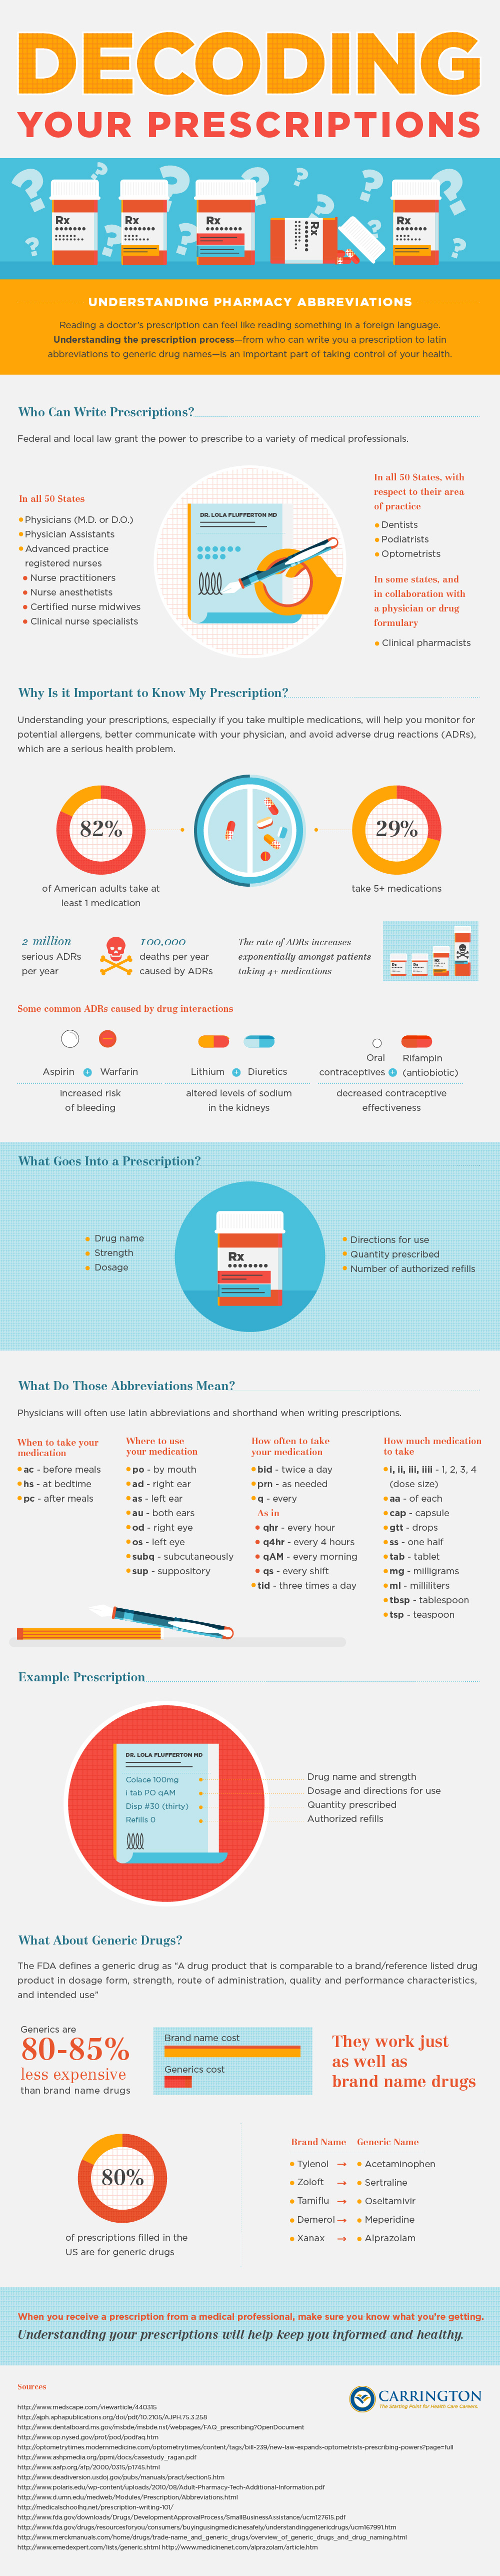 Decoding prescriptions